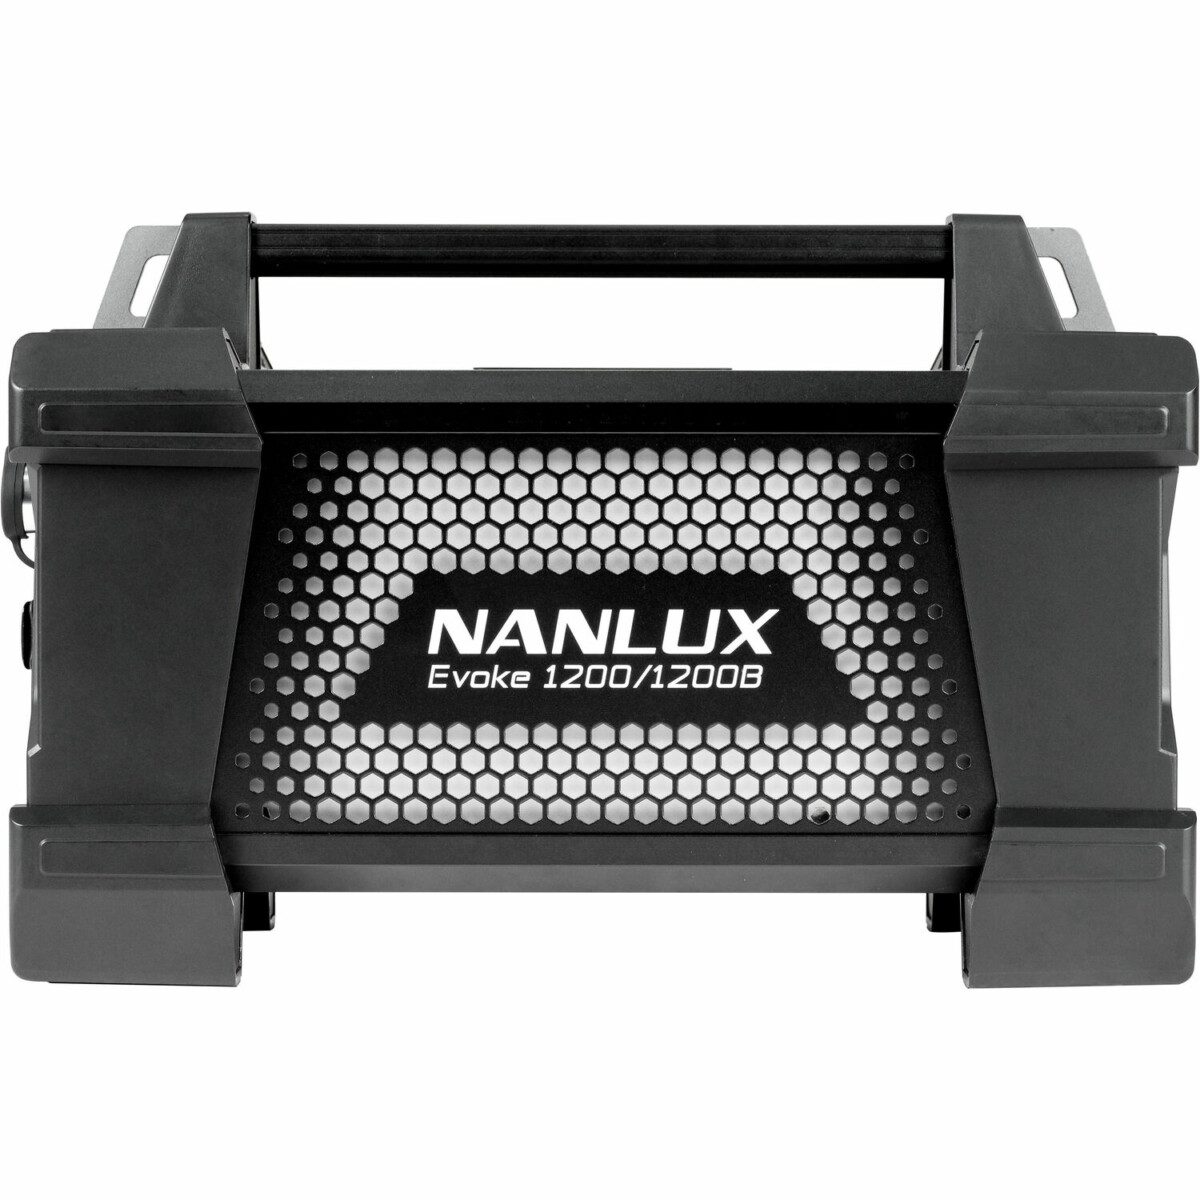 Nanlux Evoquer 1200B